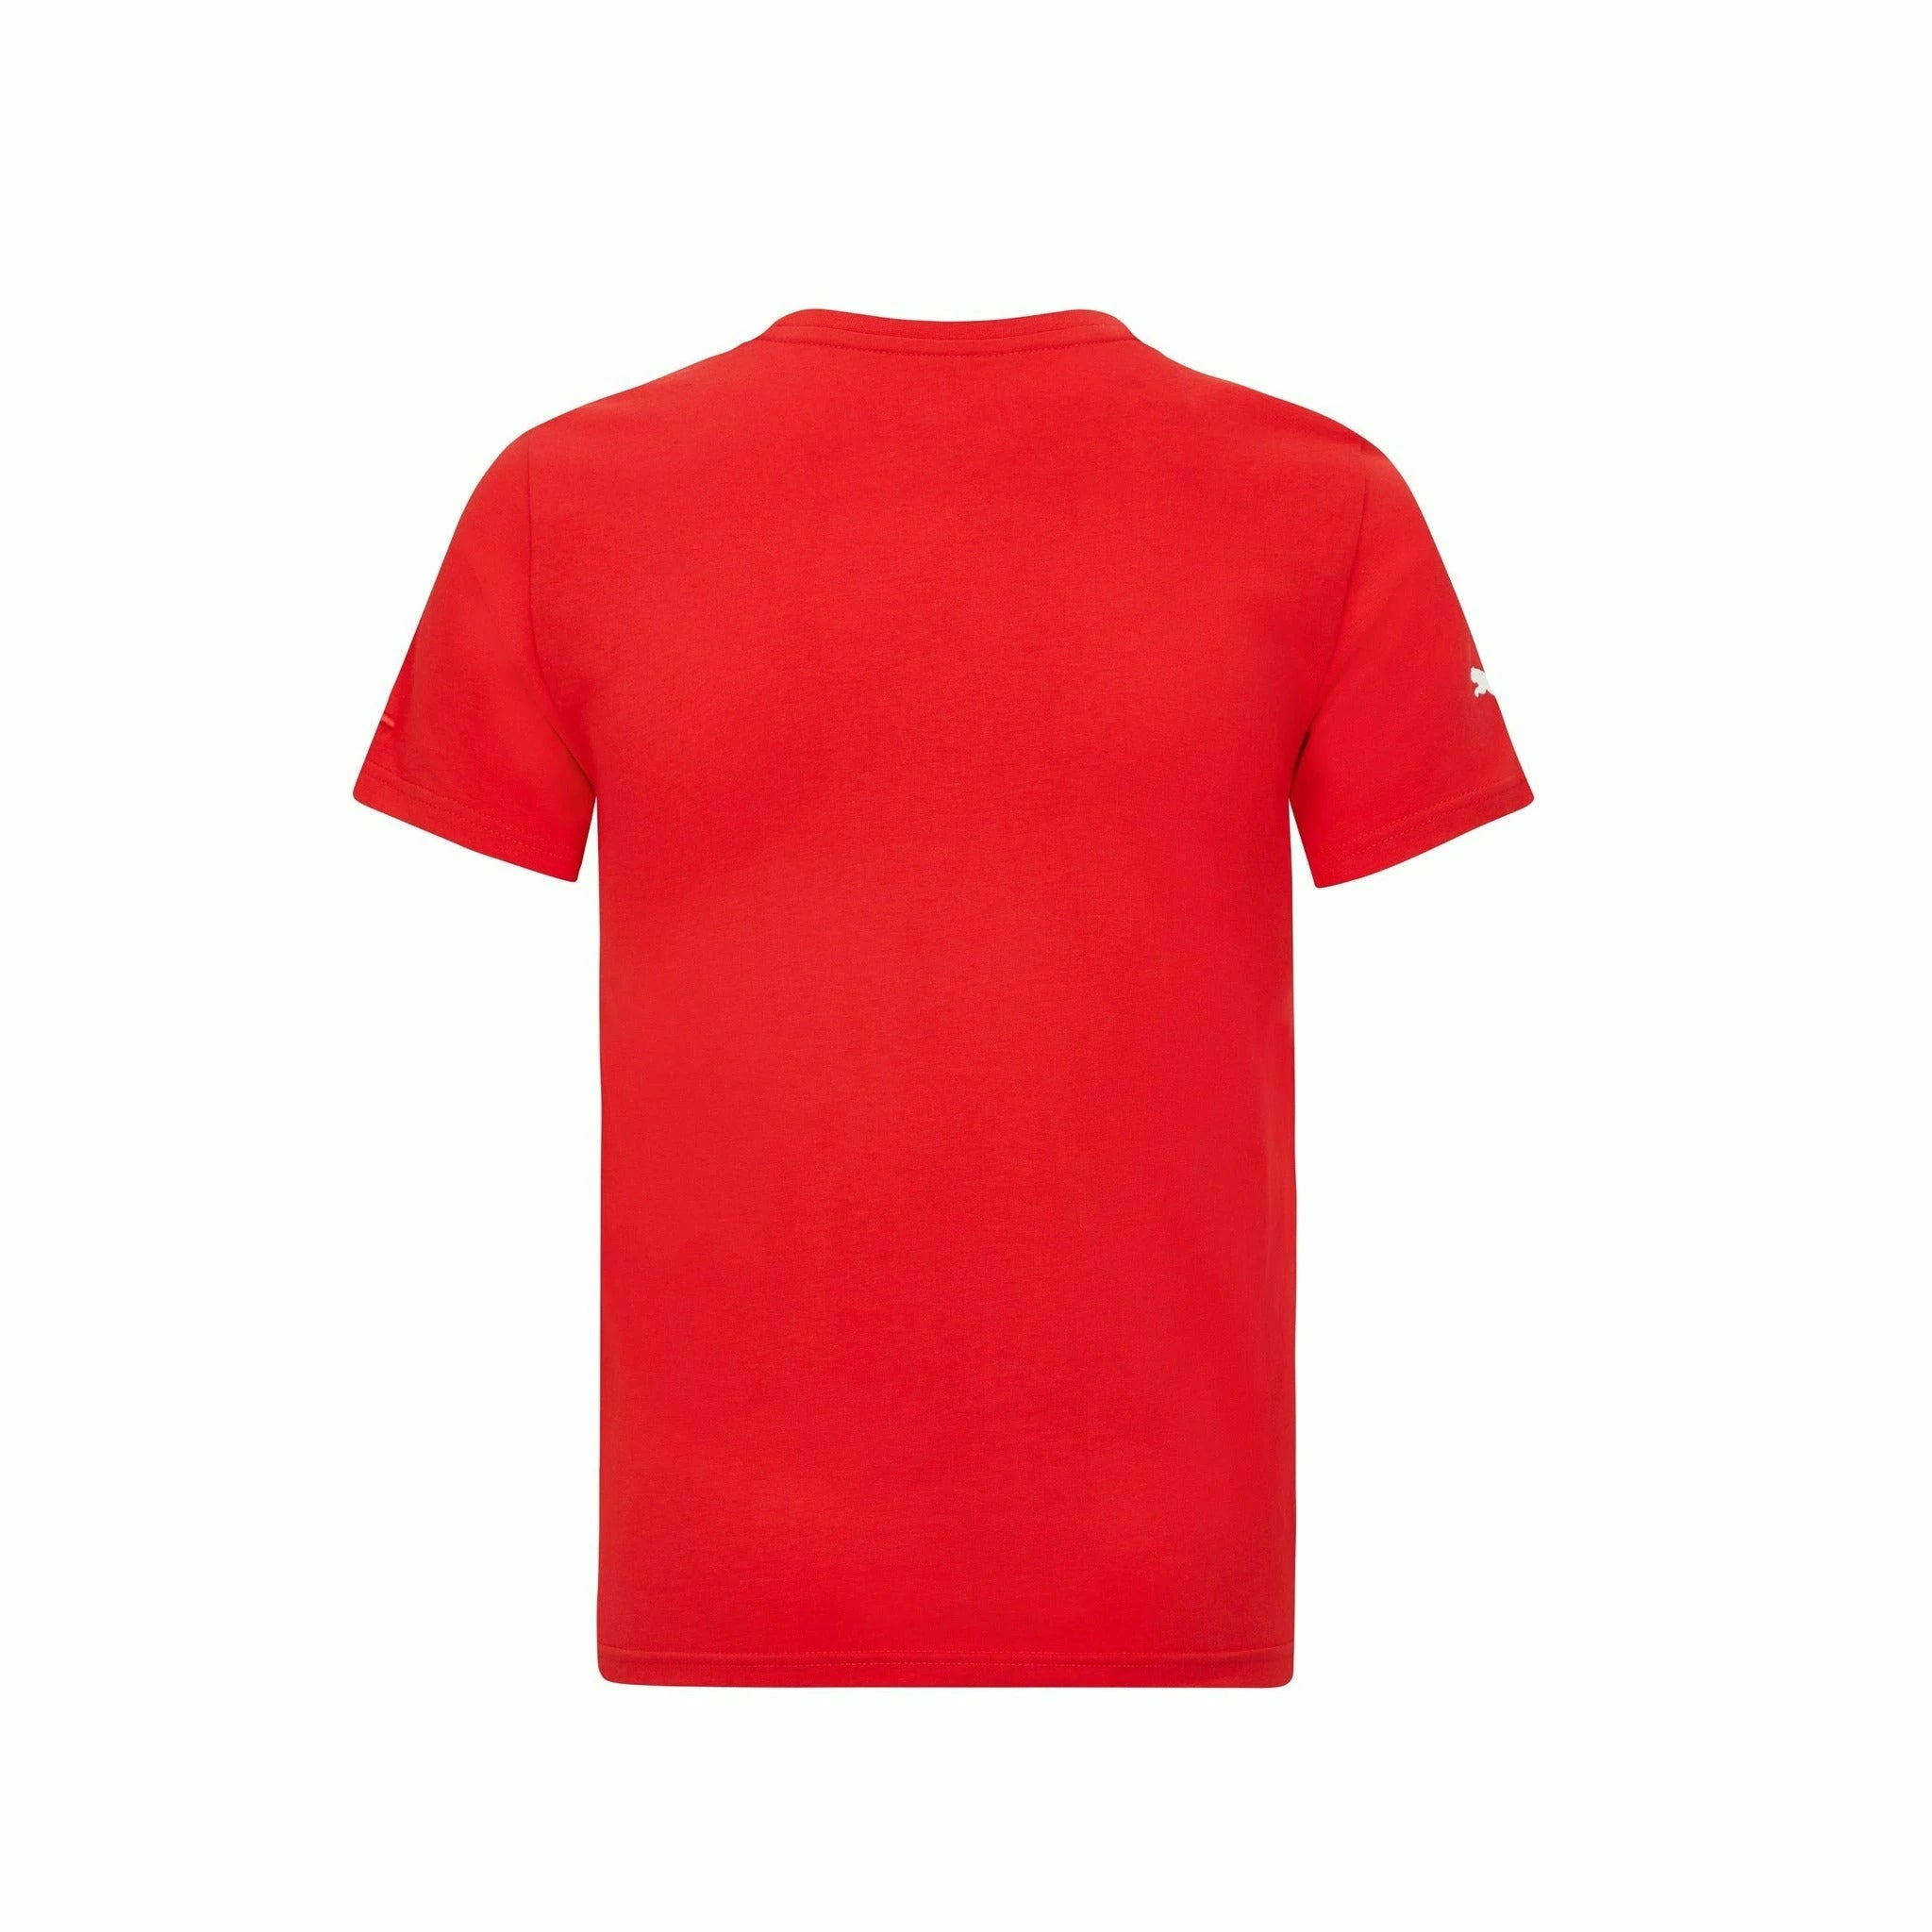 Scuderia Ferrari F1 Kids Large Shield T-Shirt Red